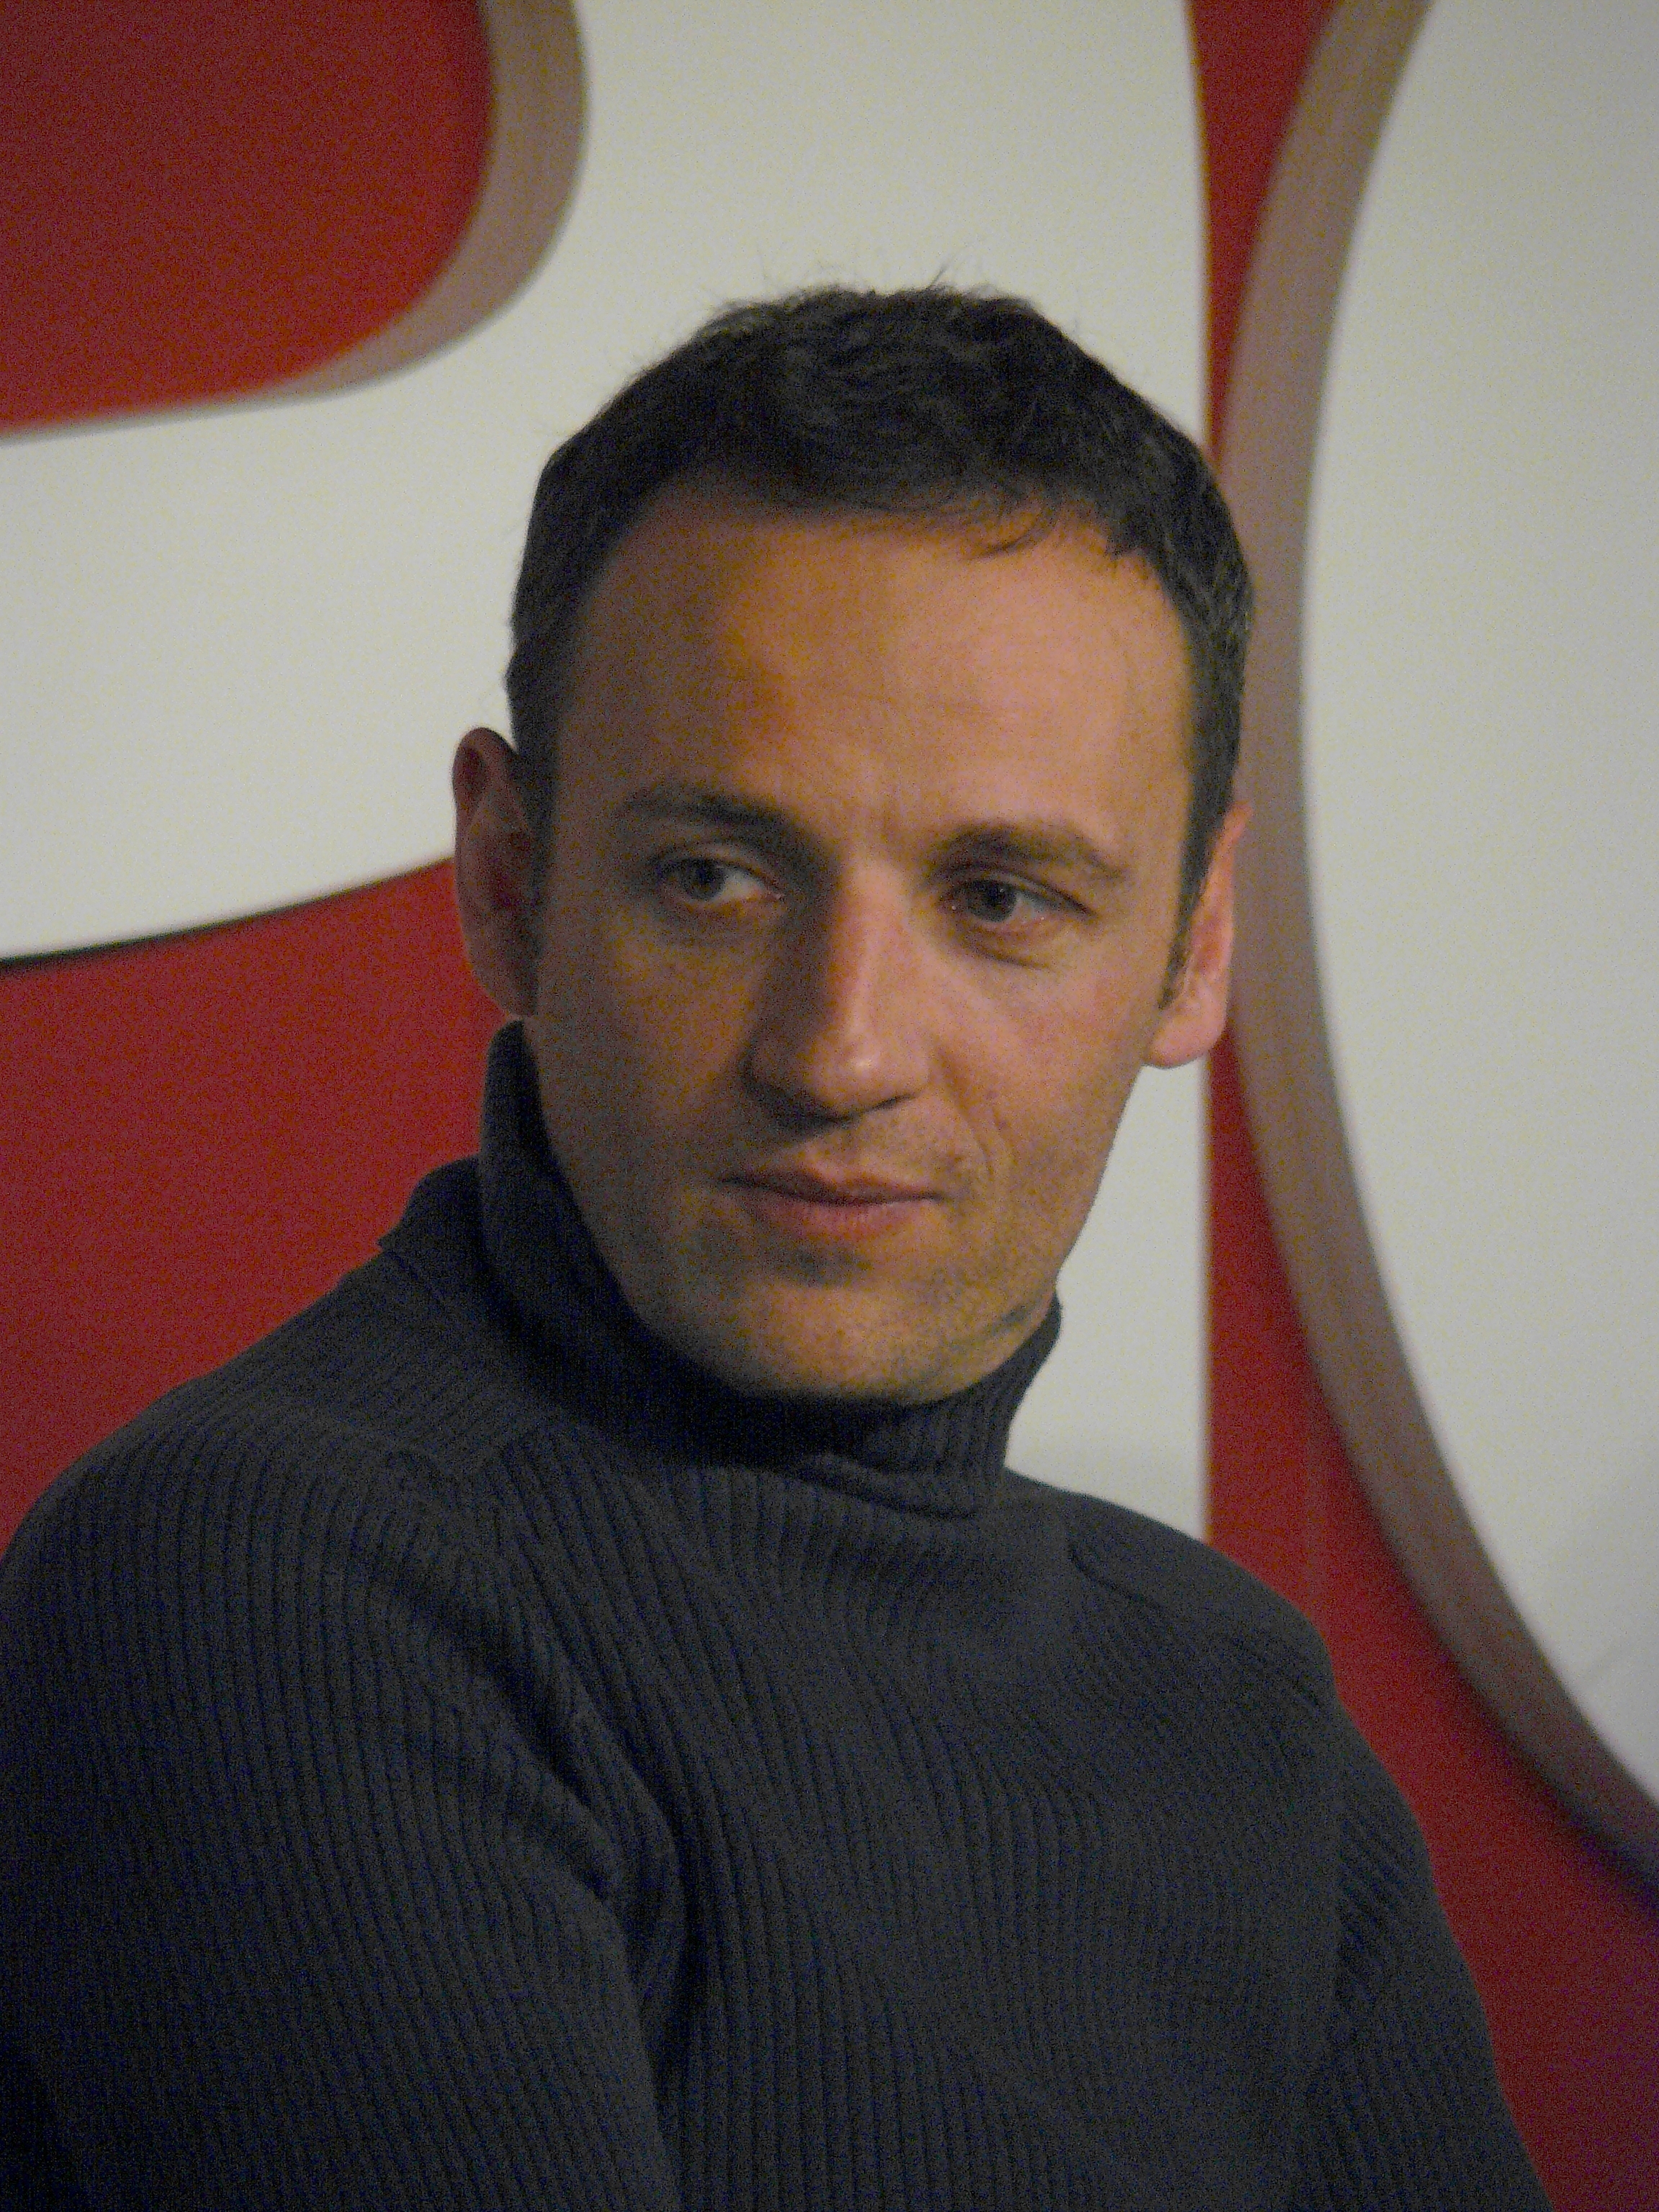 François Bégaudeau, March 2009